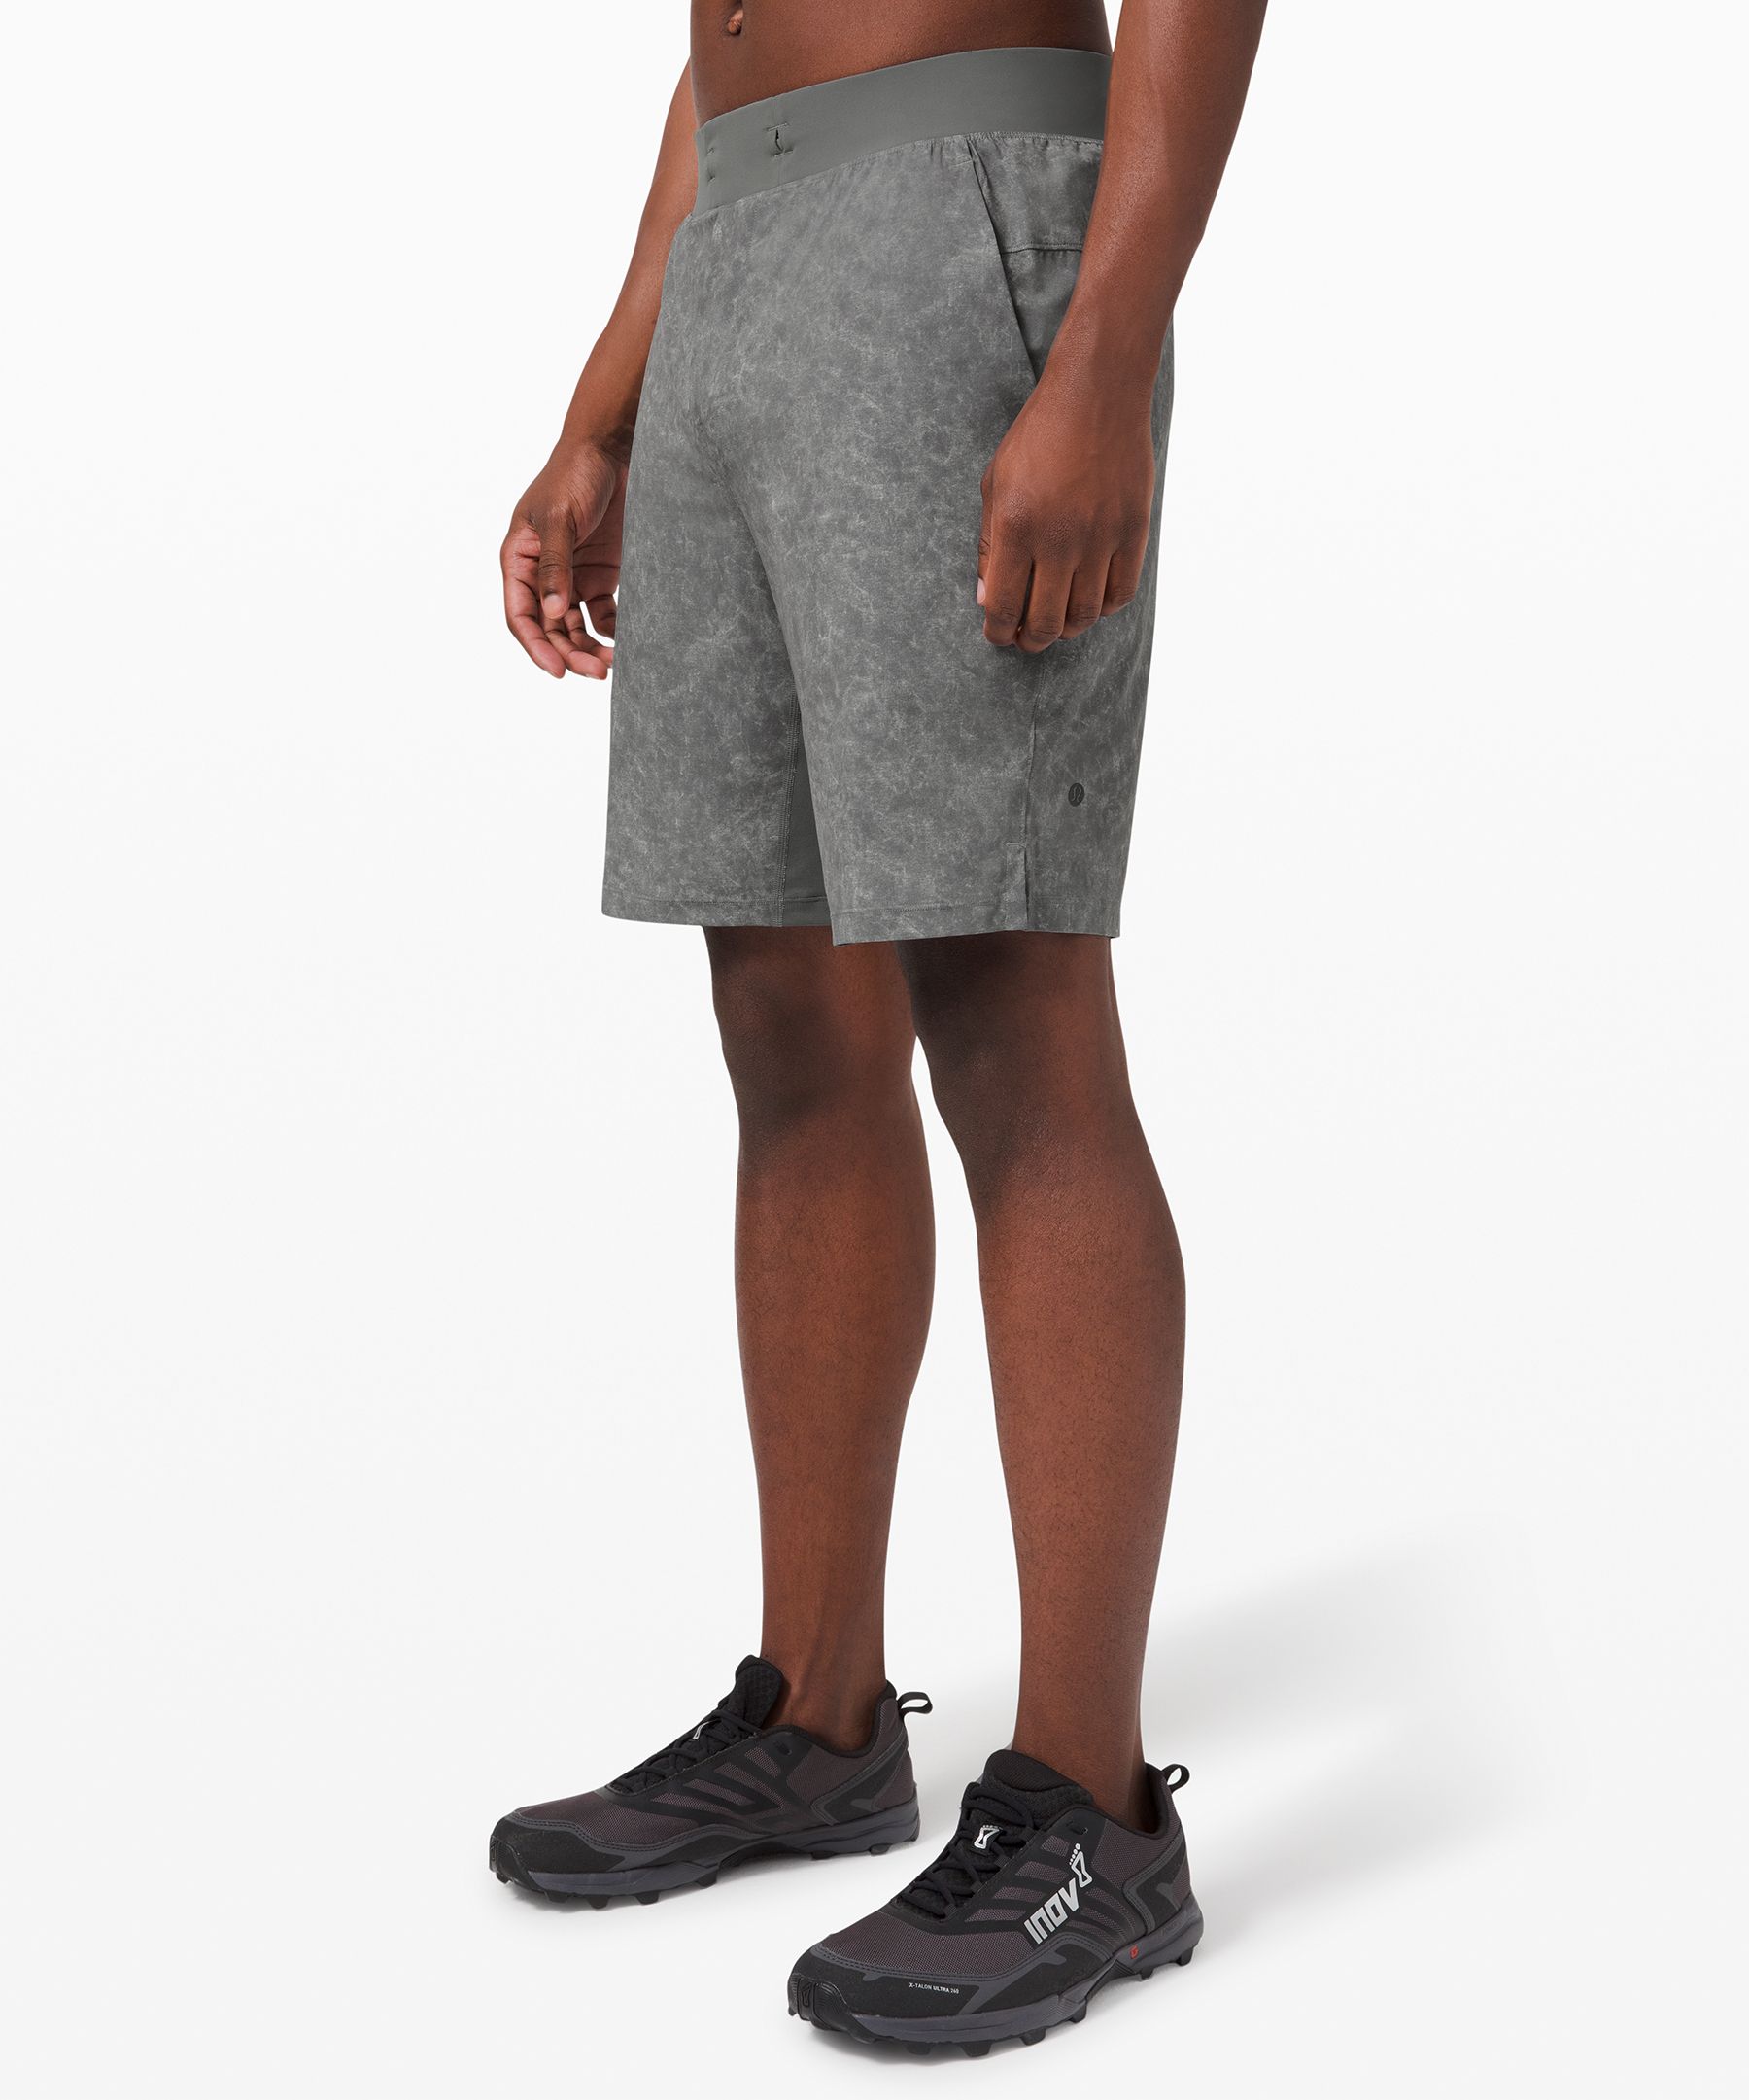 lululemon shorts with phone pocket